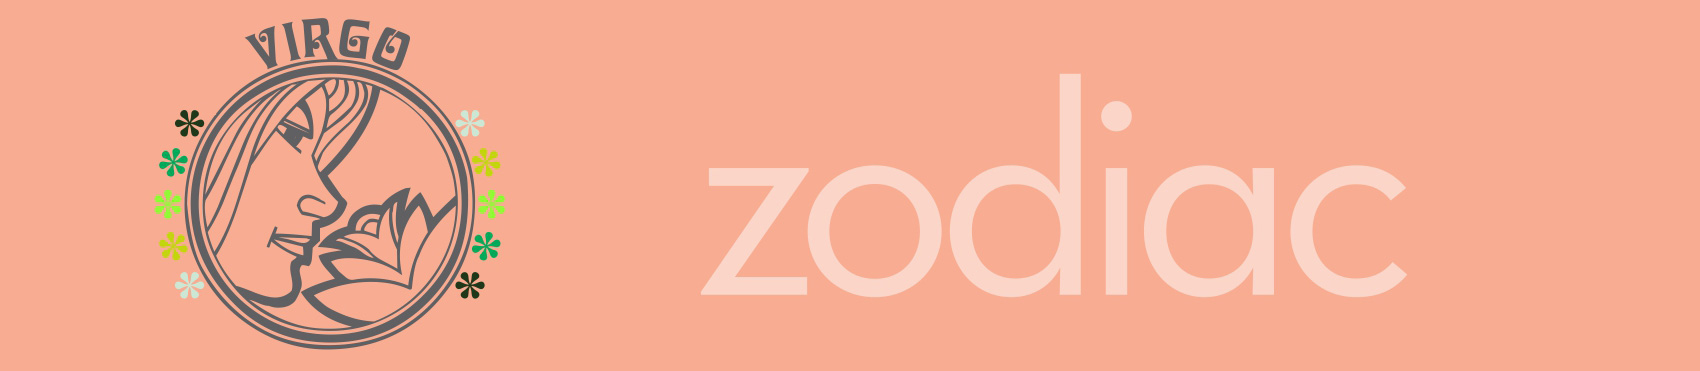 Zodiac logo ideas